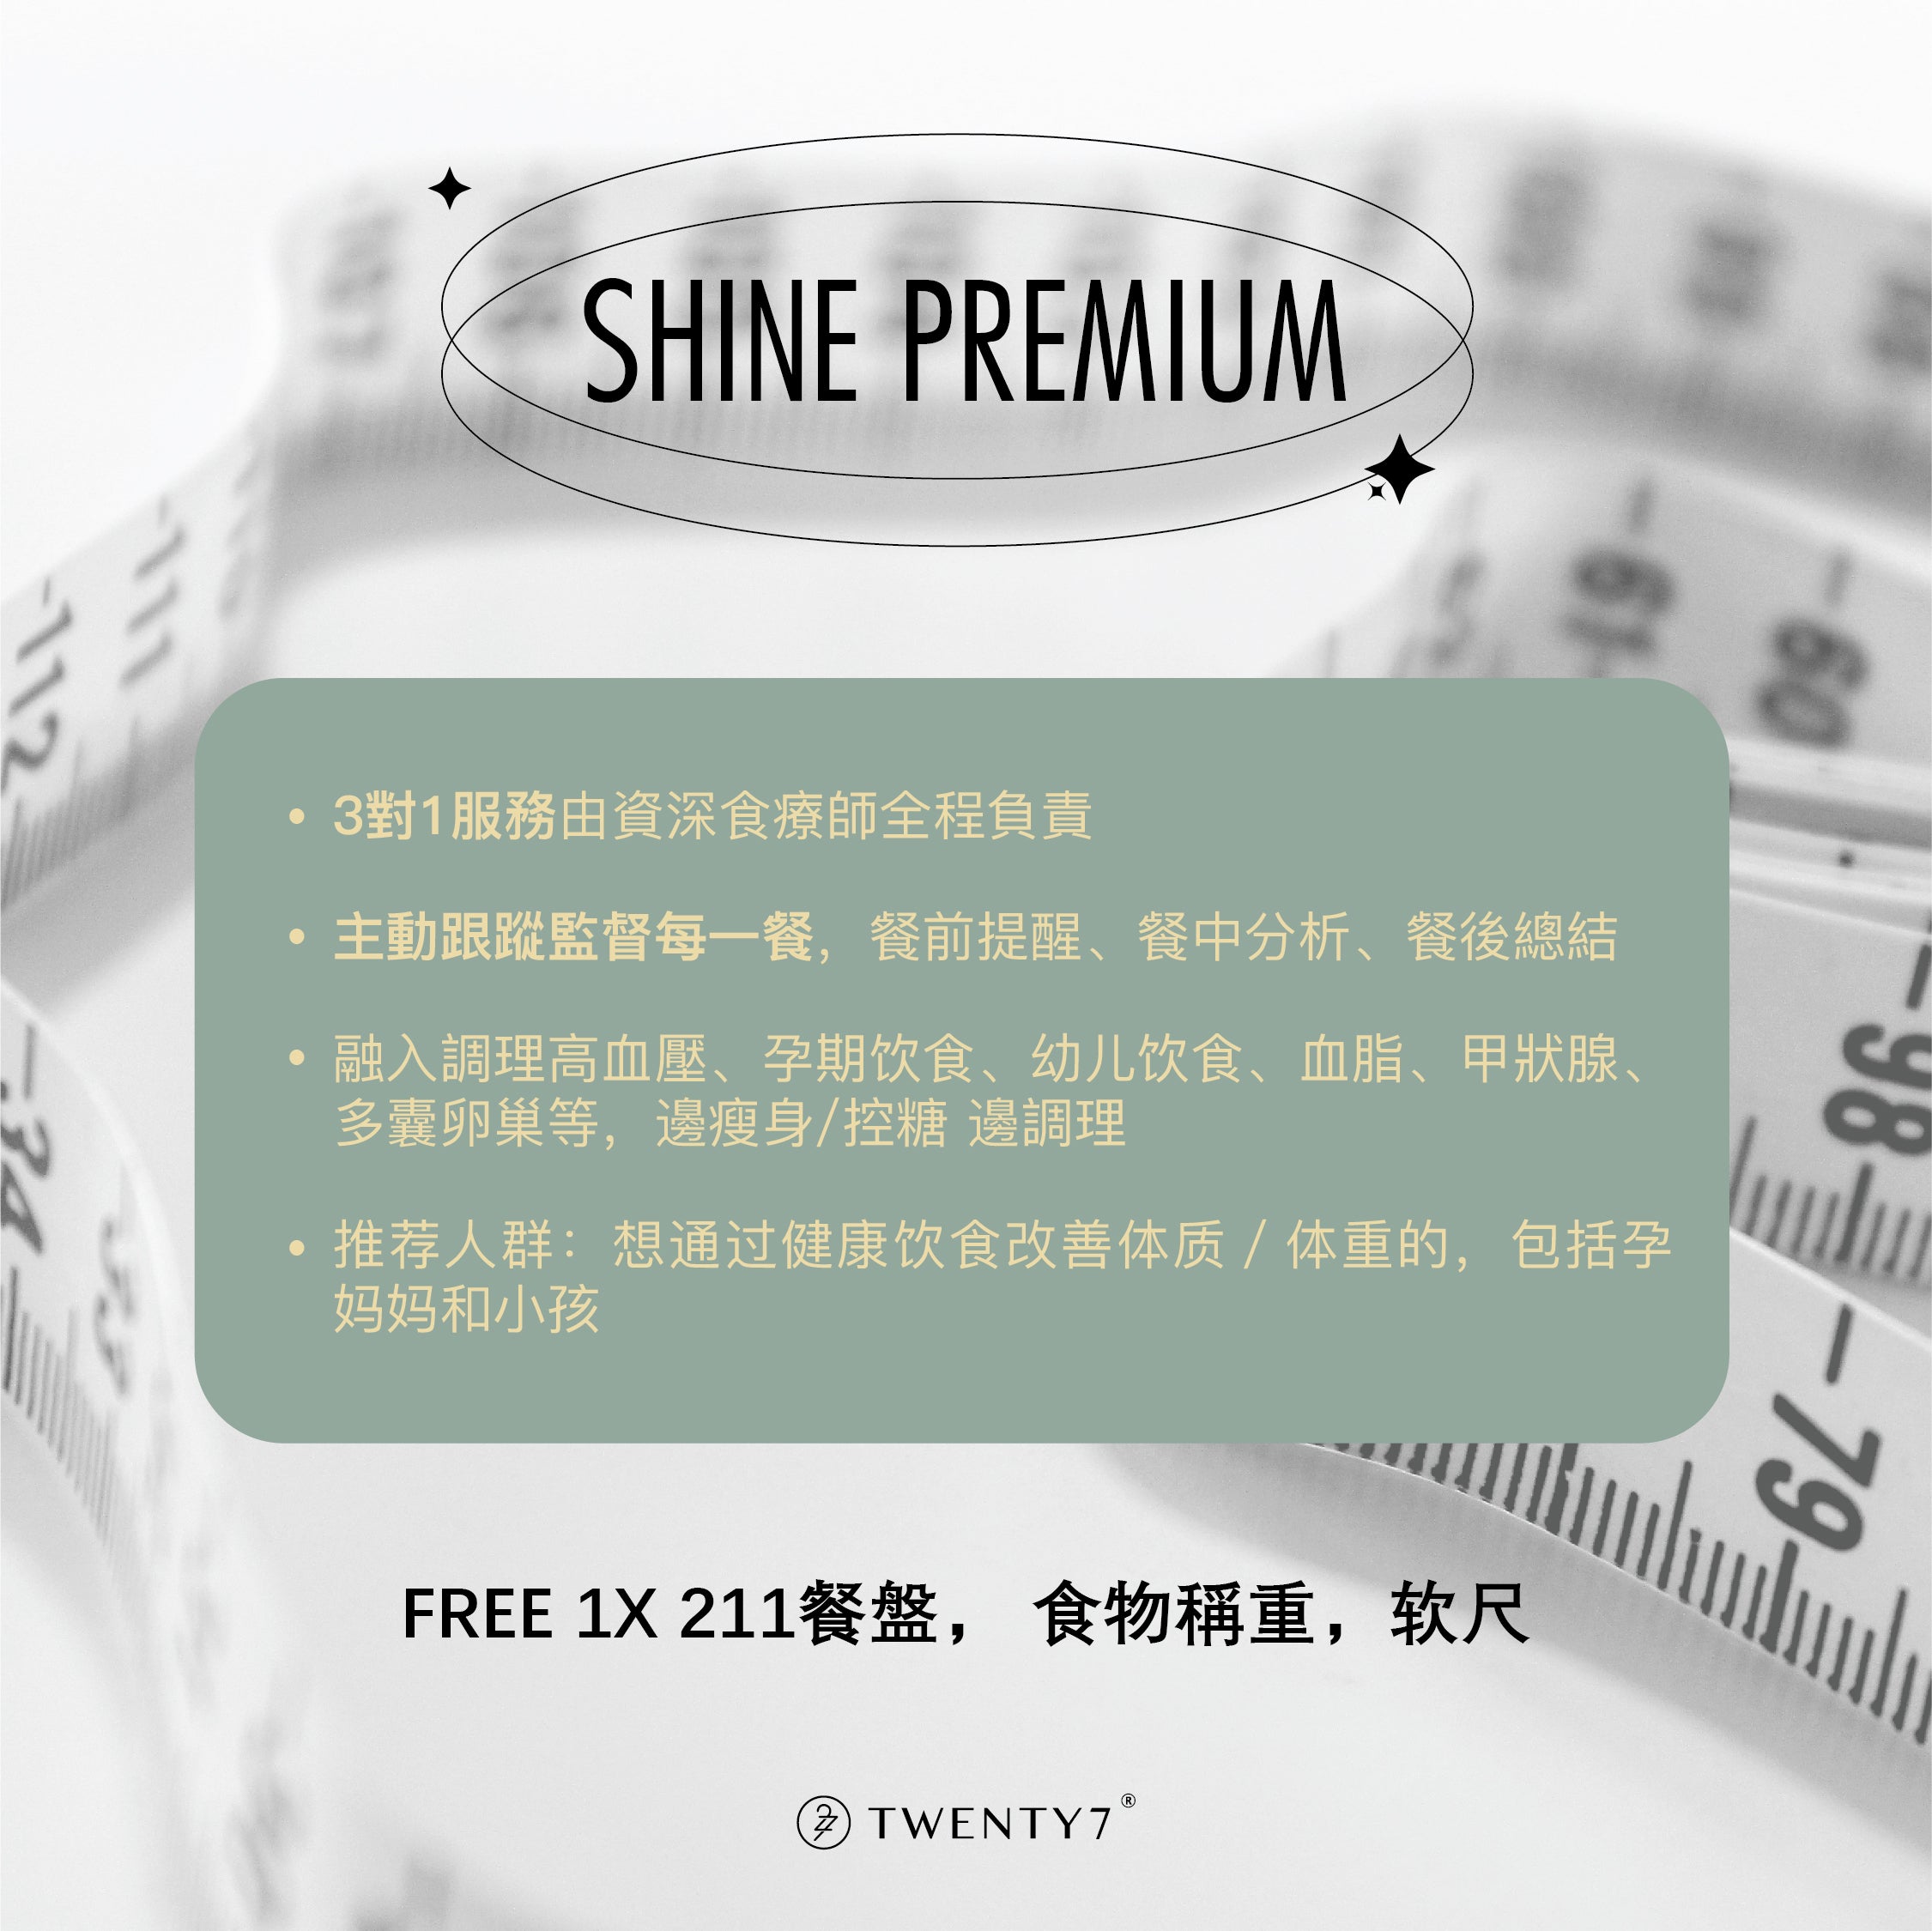 SHINE Premium